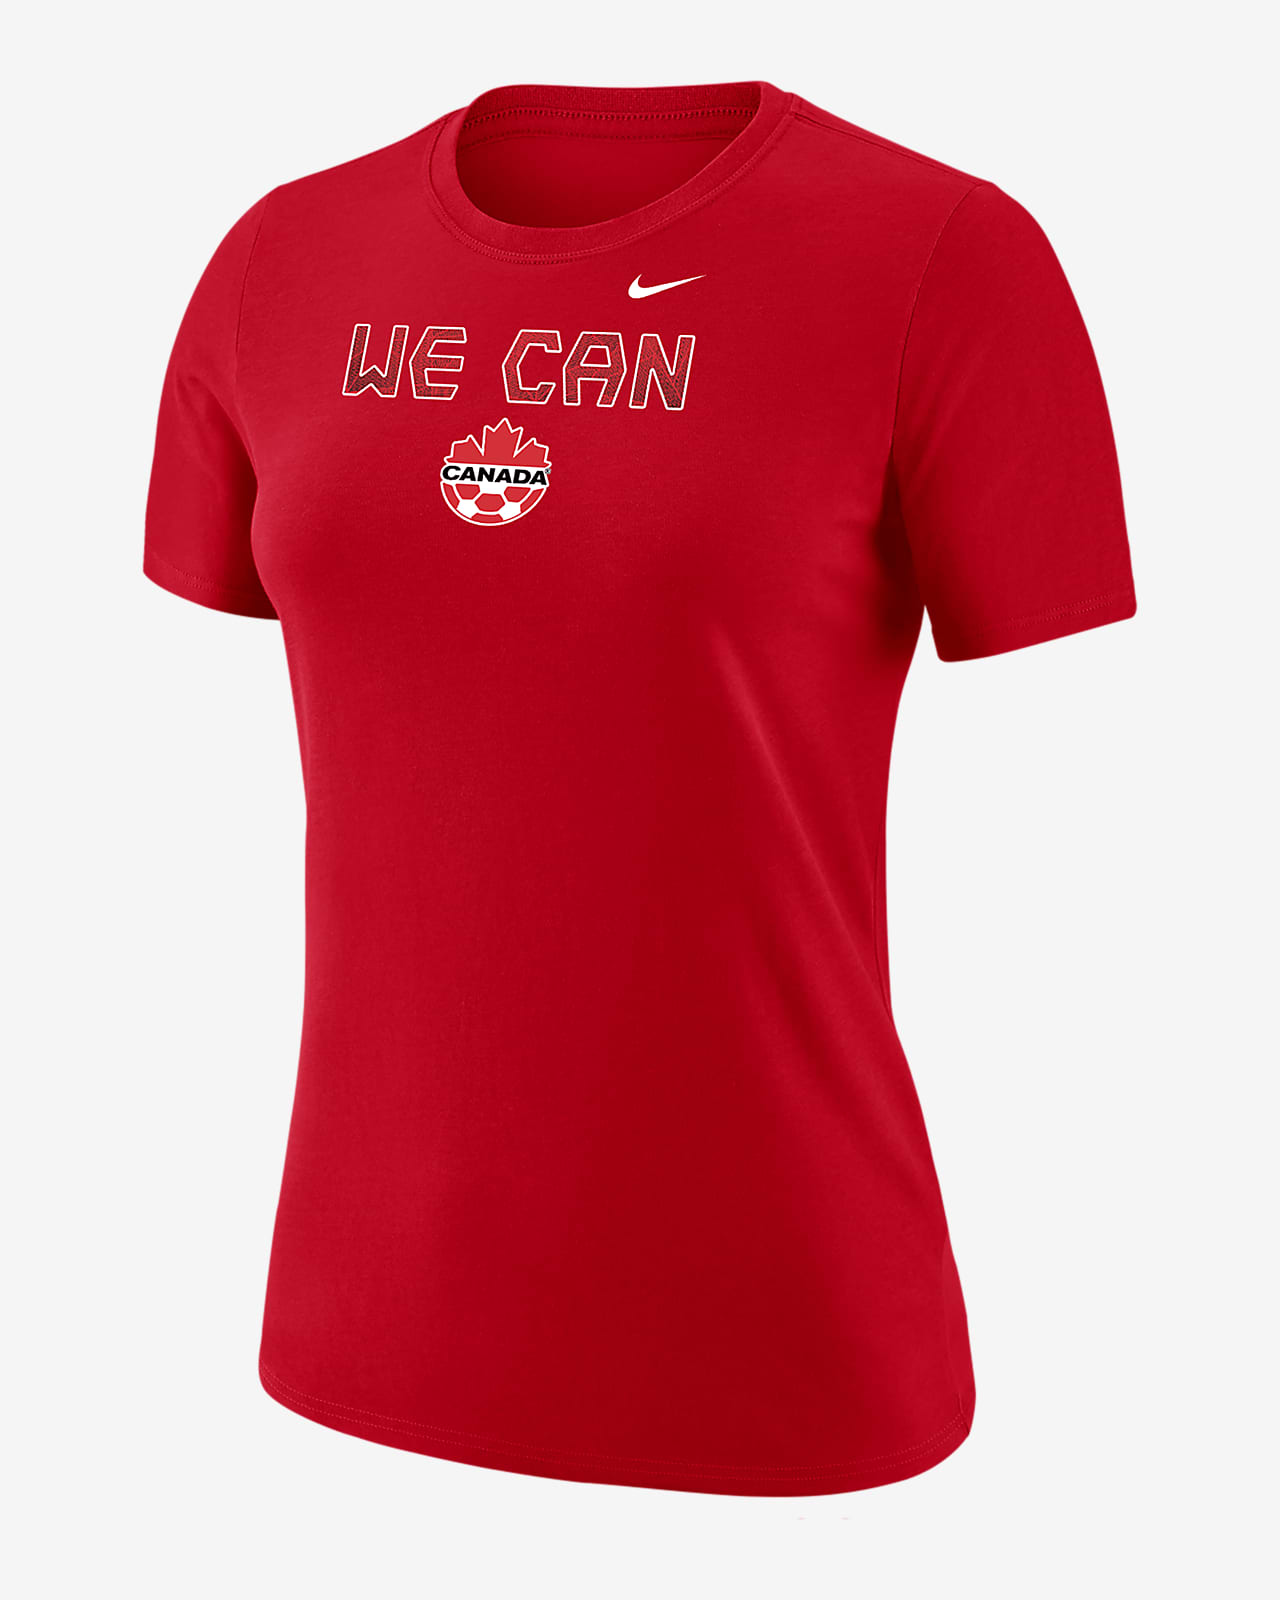 Canada Women's Nike Soccer T-Shirt